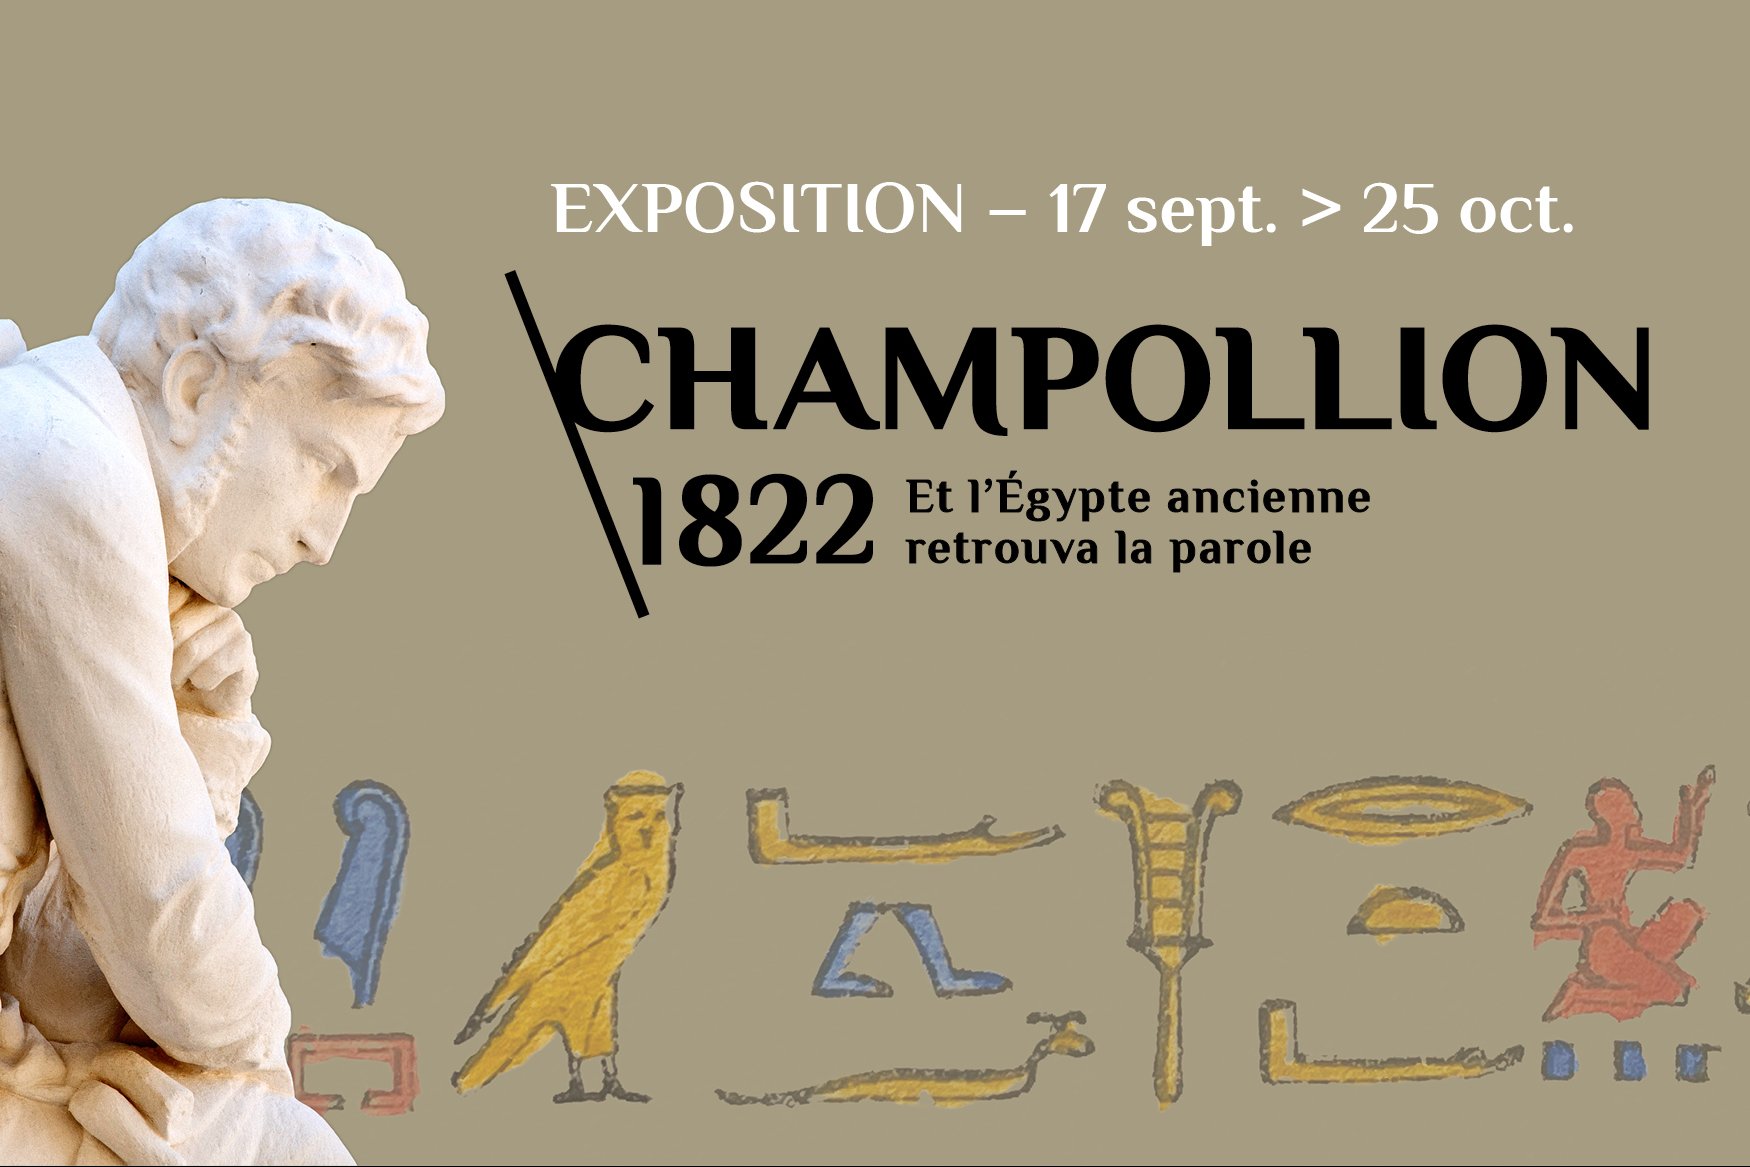 Exposition « Champollion 1822 » du 17 septembre au 25 octobre 2022 au Collège de France